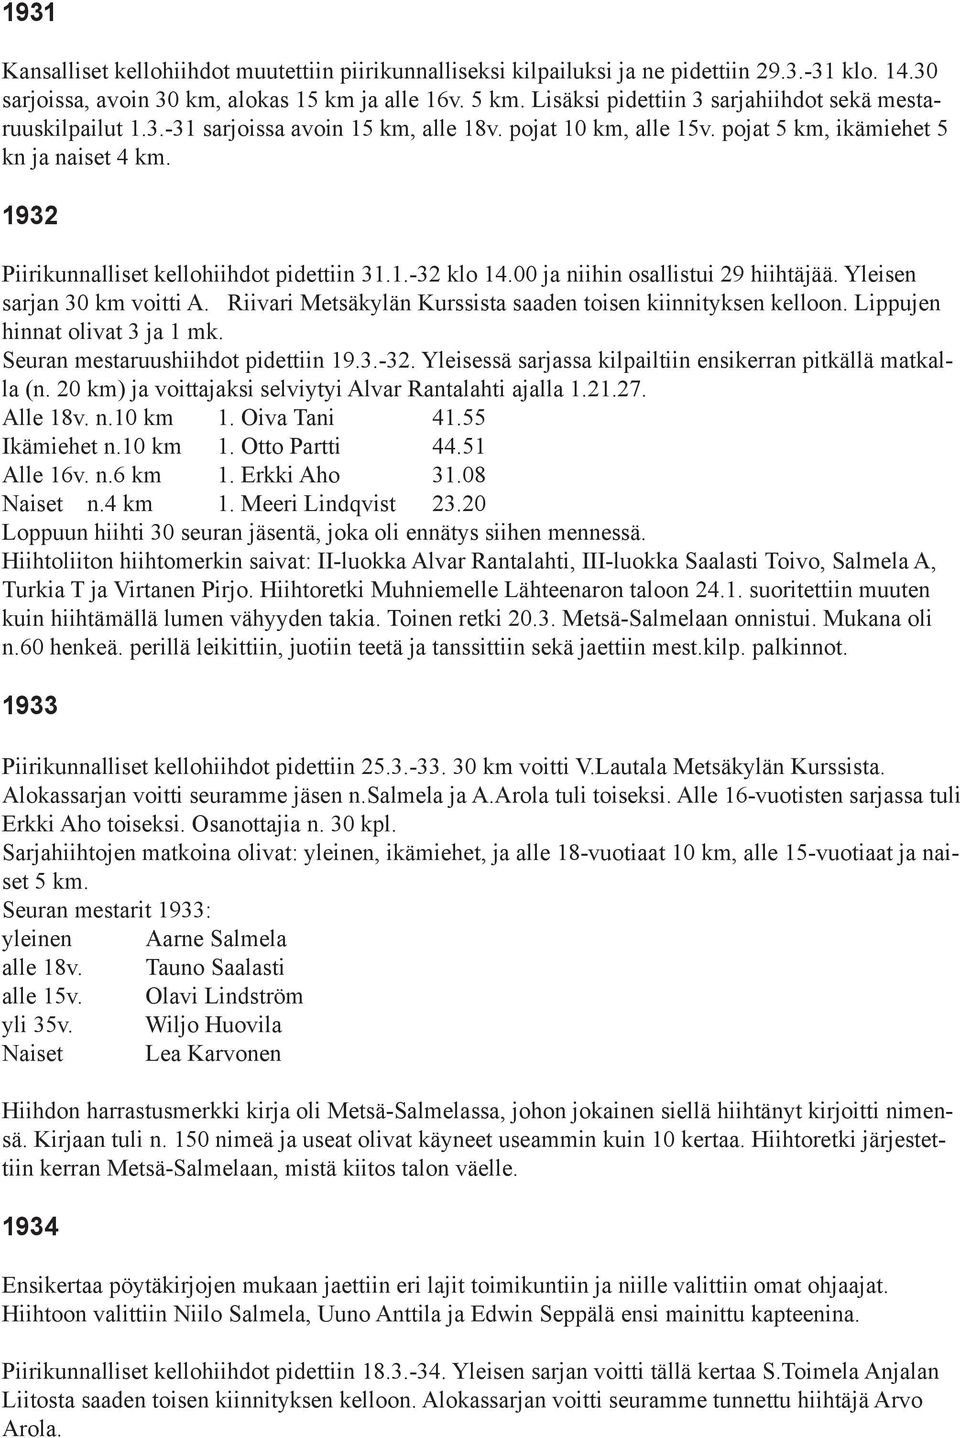 1932 Piirikunnalliset kellohiihdot pidettiin 31.1.-32 klo 14.00 ja niihin osallistui 29 hiihtäjää. Yleisen sarjan 30 km voitti A. Riivari Metsäkylän Kurssista saaden toisen kiinnityksen kelloon.